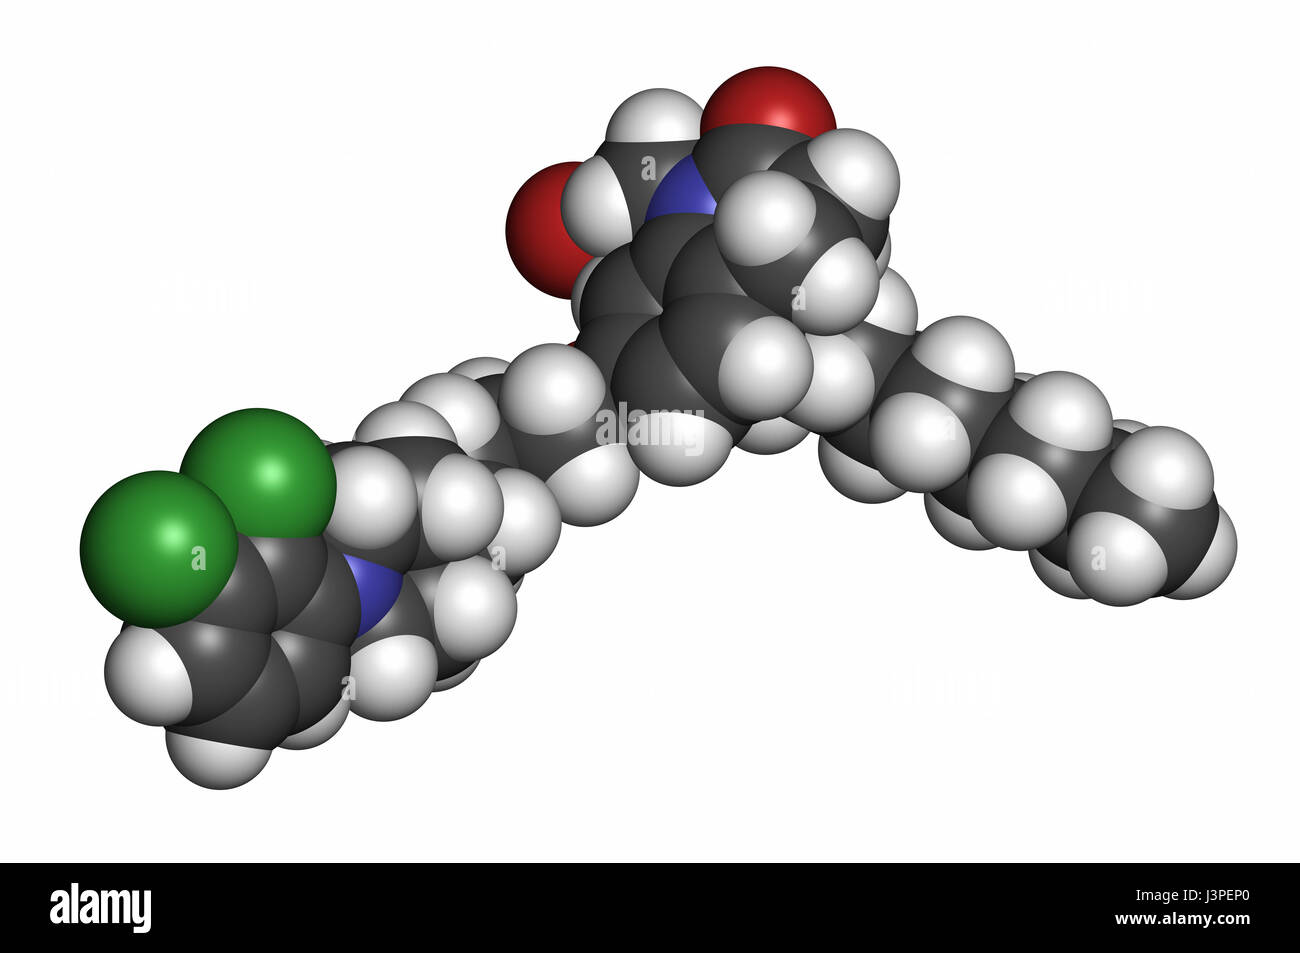 Aripiprazolo lauroxil farmaco antipsicotico molecola (iniettabile a rilascio prolungato modulo).. Gli atomi sono rappresentati come sfere convenzionale con codifica a colori Foto Stock